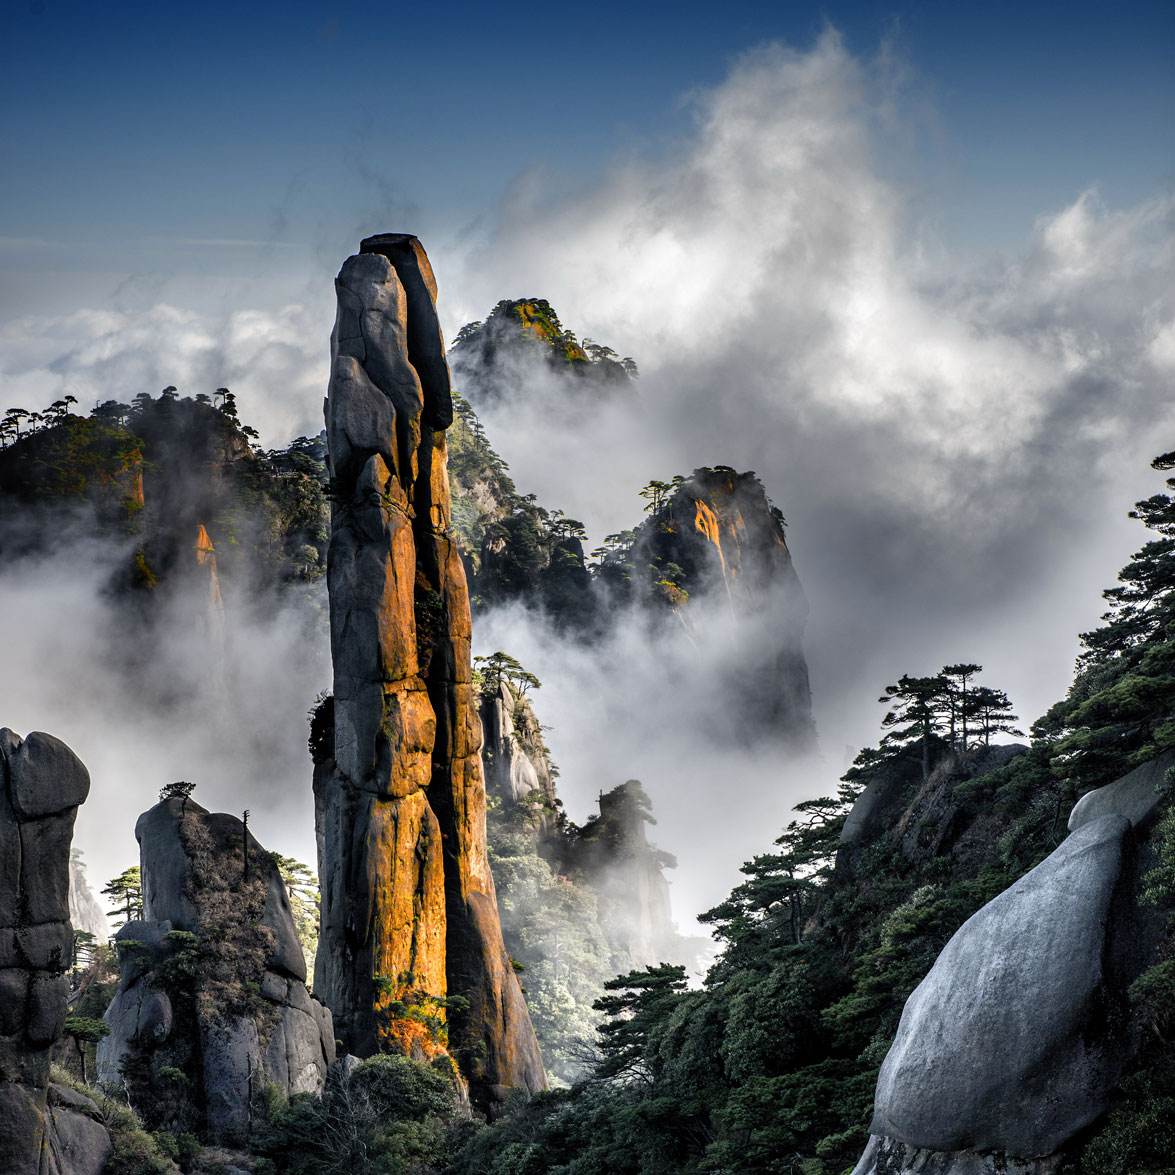 历史 正文  江西的最大ip,庐山,不论是现实之美还是文化传统,都有取之